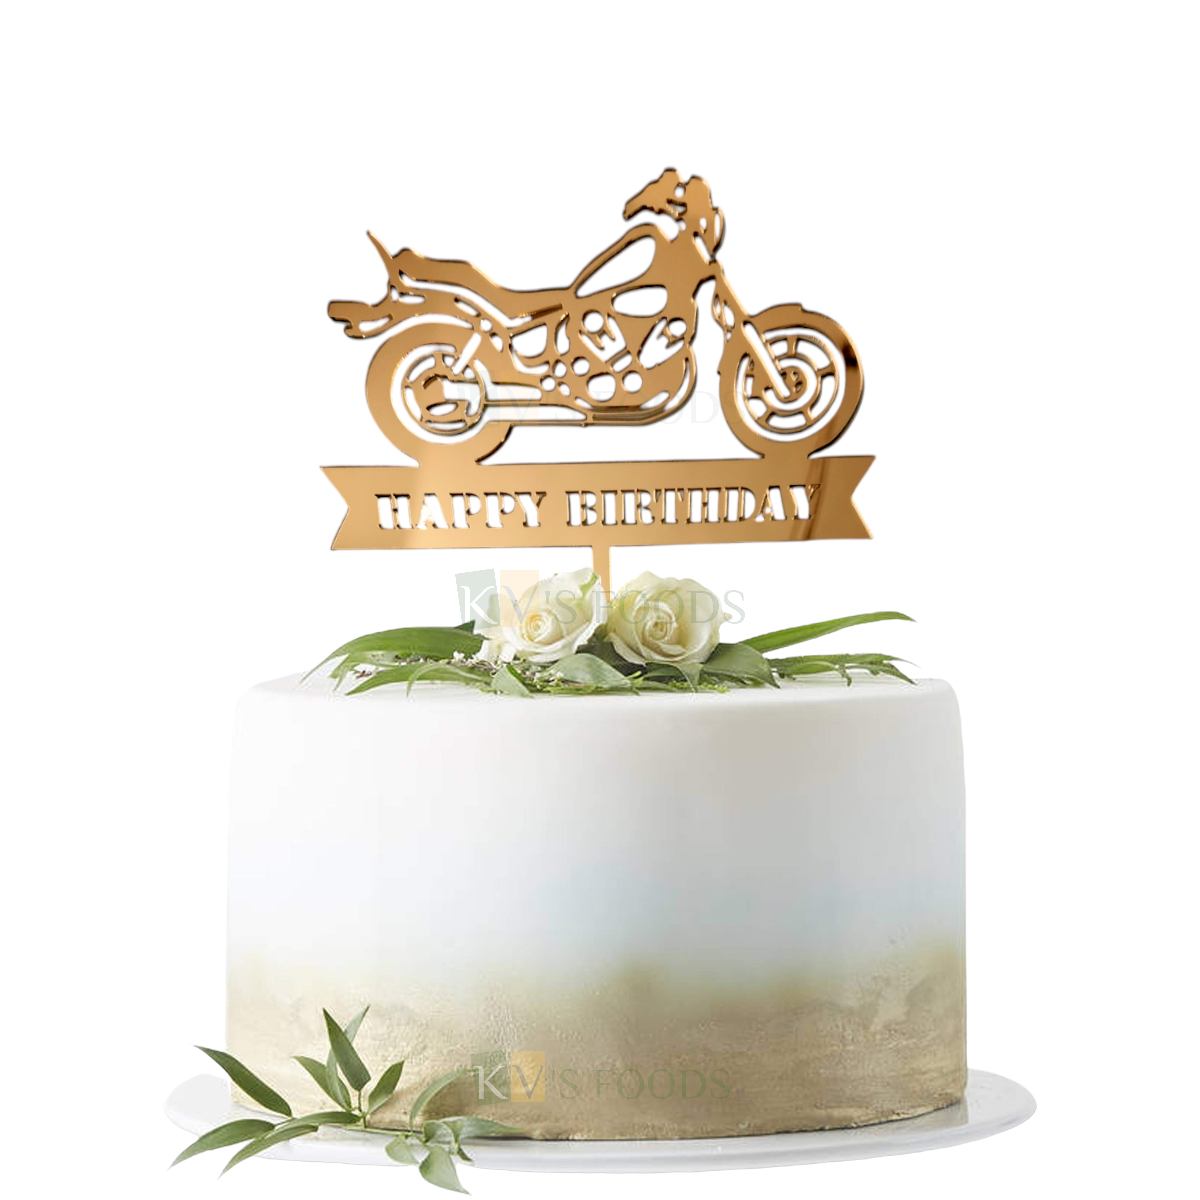 1PC Golden Acrylic Shiny Glass Finish Happy Birthday Bike Design Cake Topper Kid Boy's Birthday Theme Cake Insert, Motorcycle Riders Birthday Party, Cake Toppers for Men Boy Birthday Party Ocassions